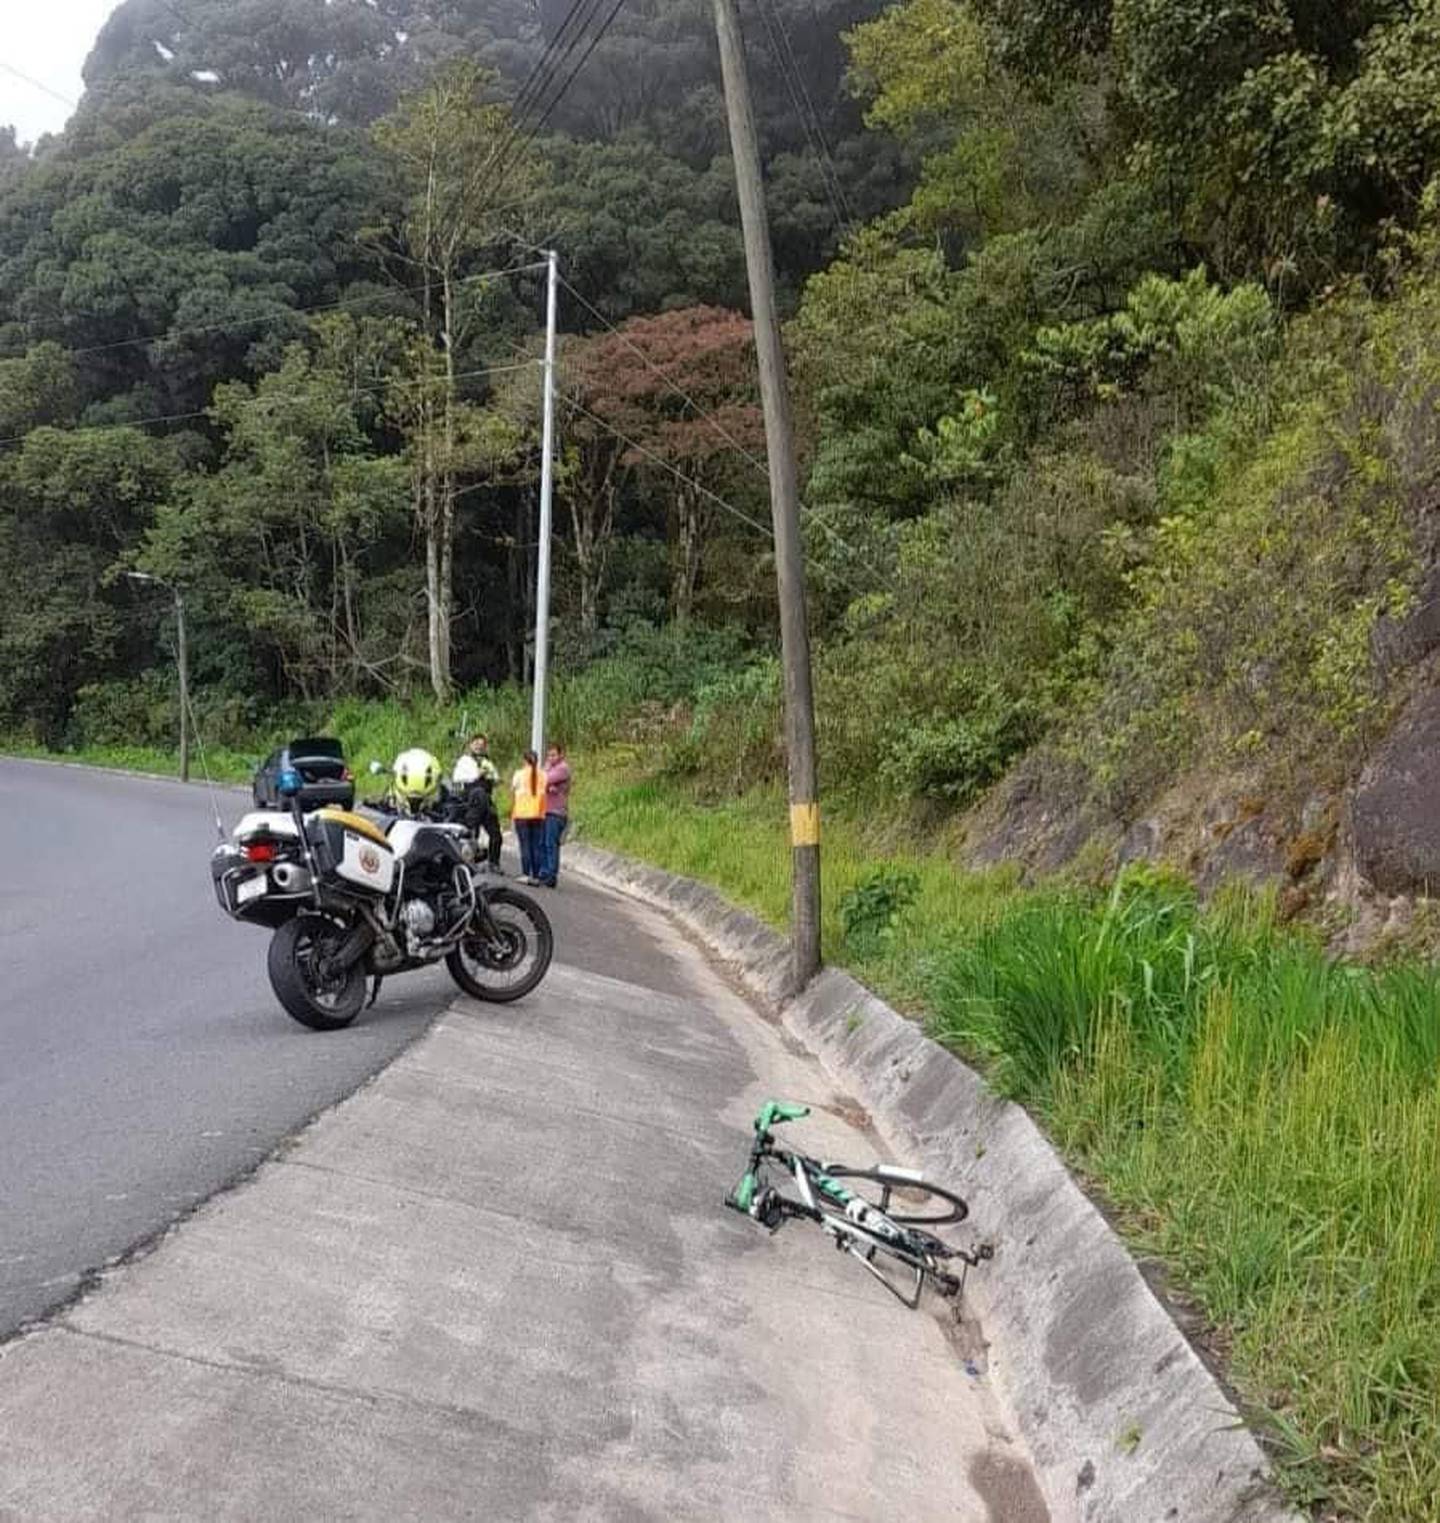 Randall Tencio Calvo, de 42 años, perdió la vida cuando practicaba ciclismo en La Cangreja, Cerro de la Muerte. Foto: Tomada de Redes sociales